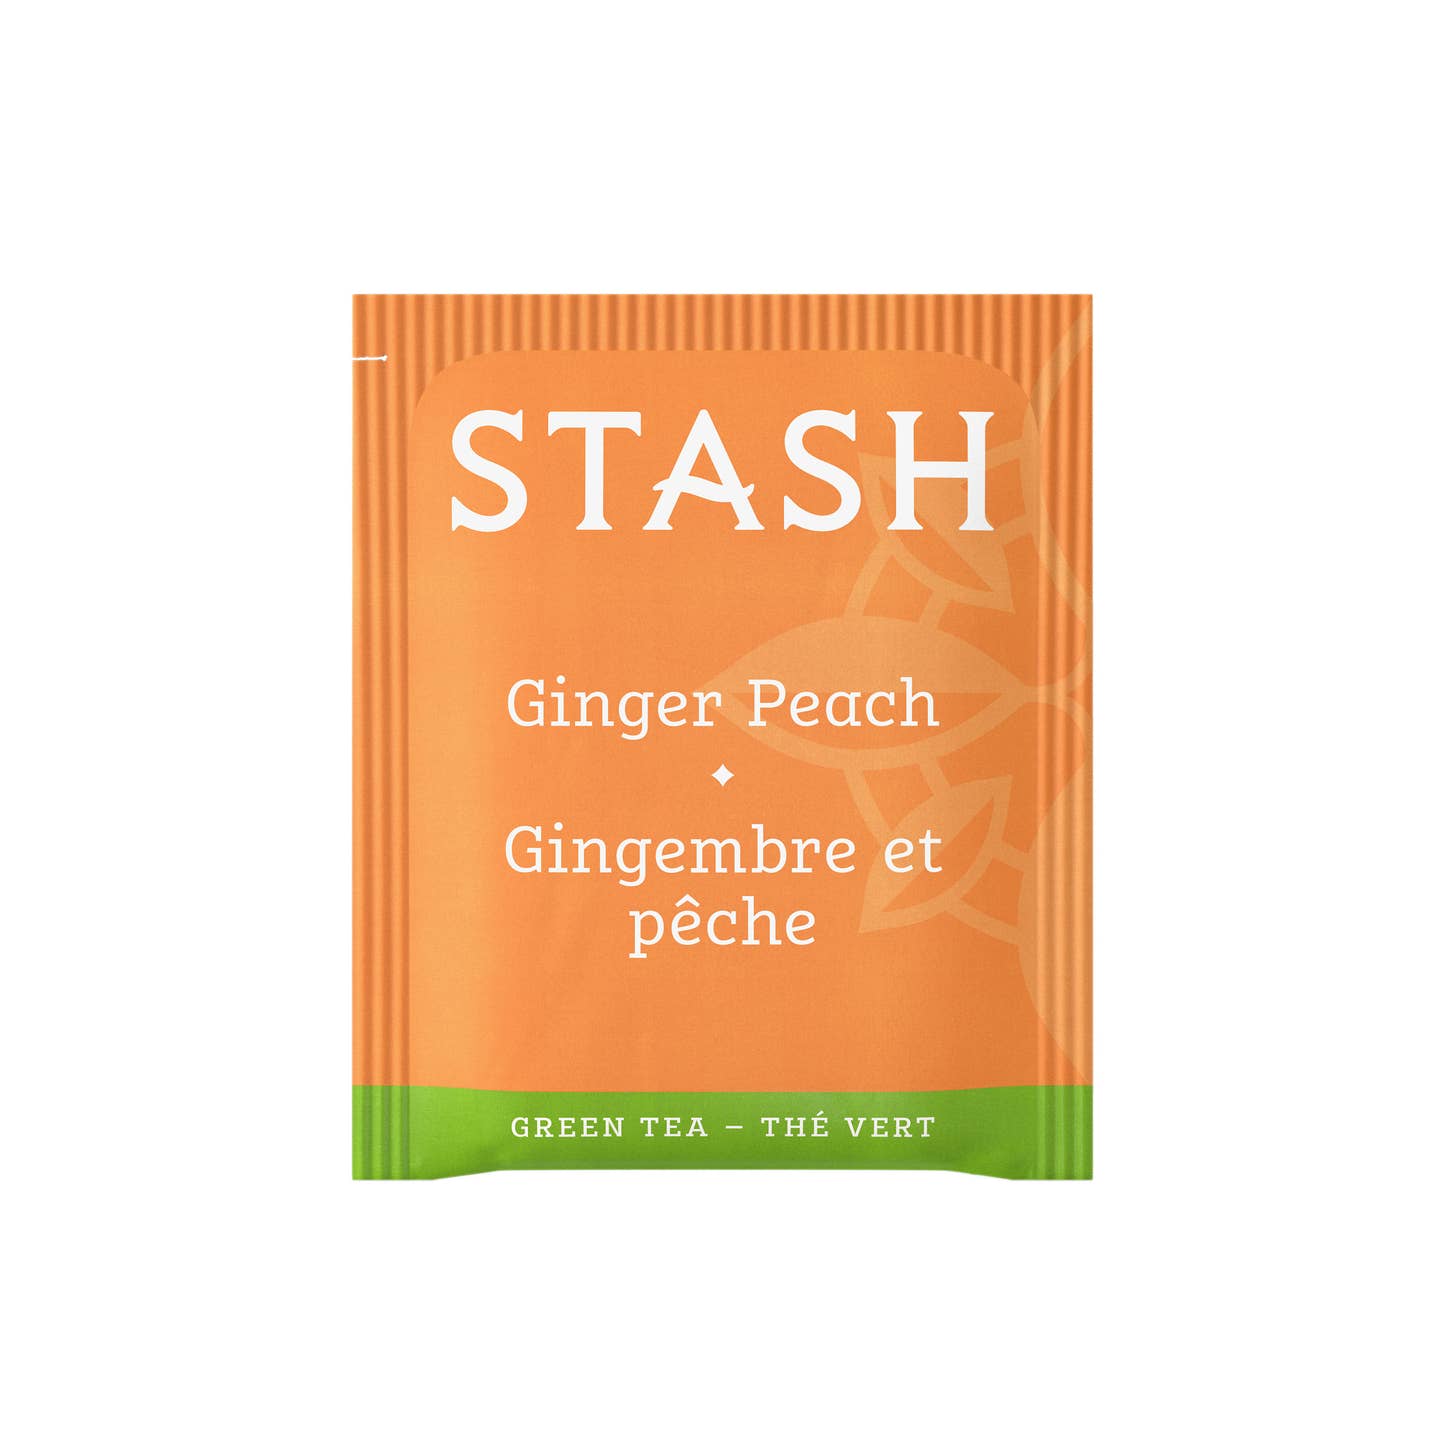 Ginger Peach Green Tea